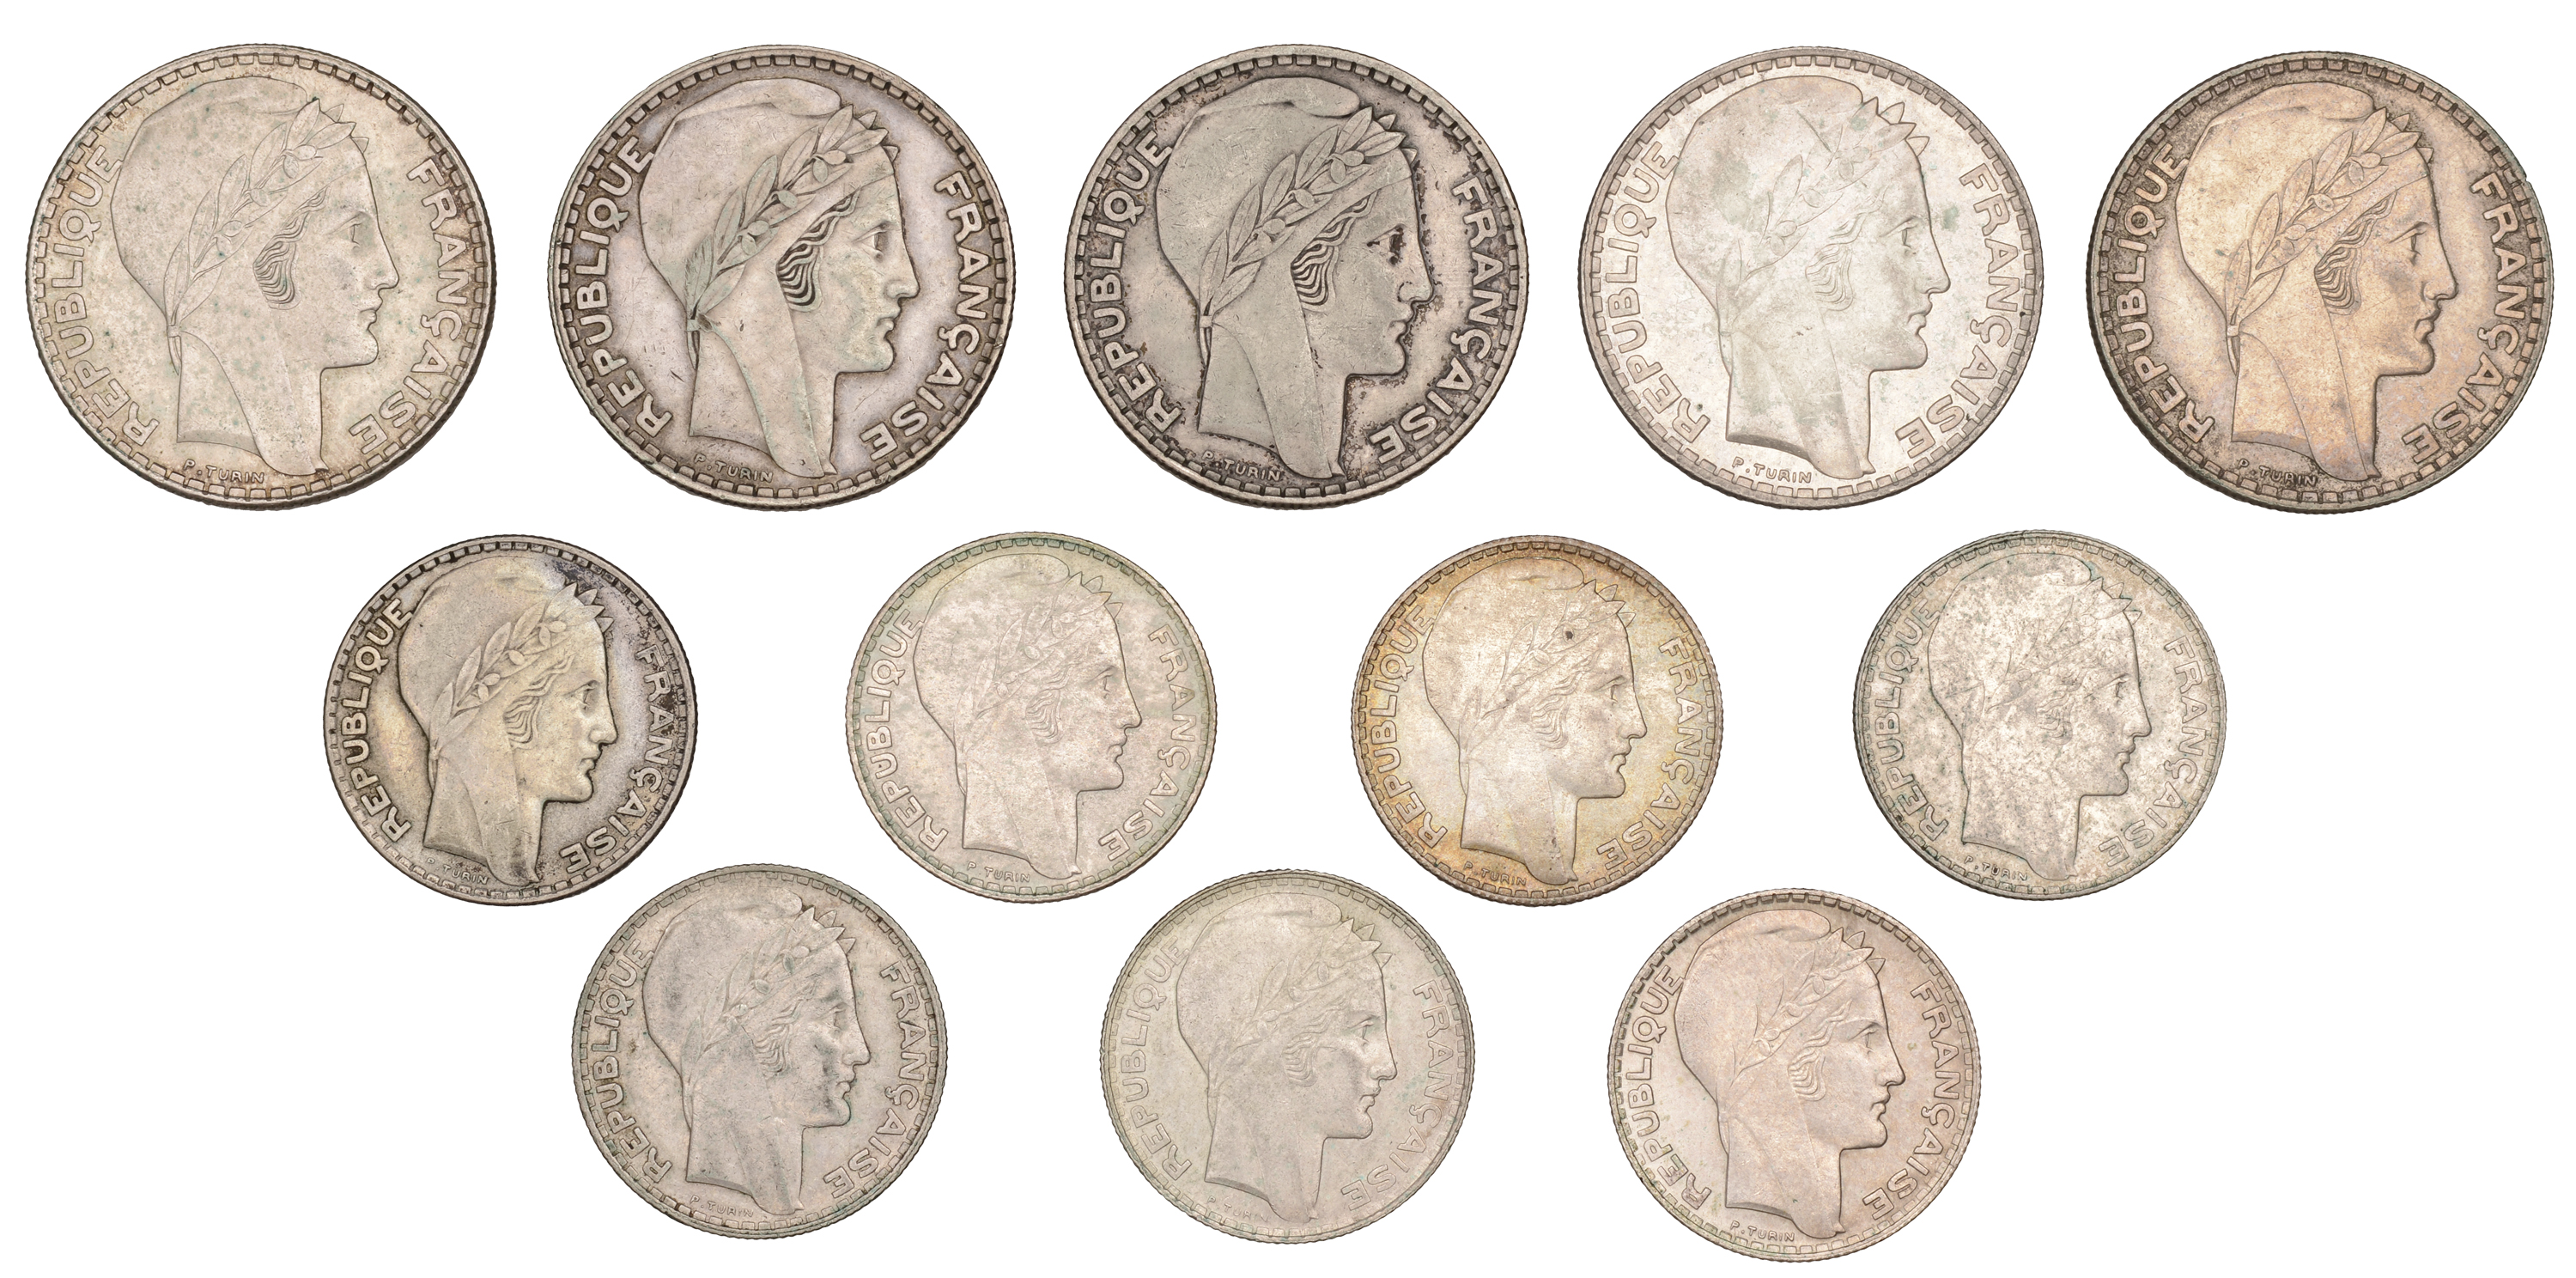 France, Third Republic (1871-1940), 20 Francs (5), 1929, 1933, 1934, 1937, 1938 (Gad. 852);...